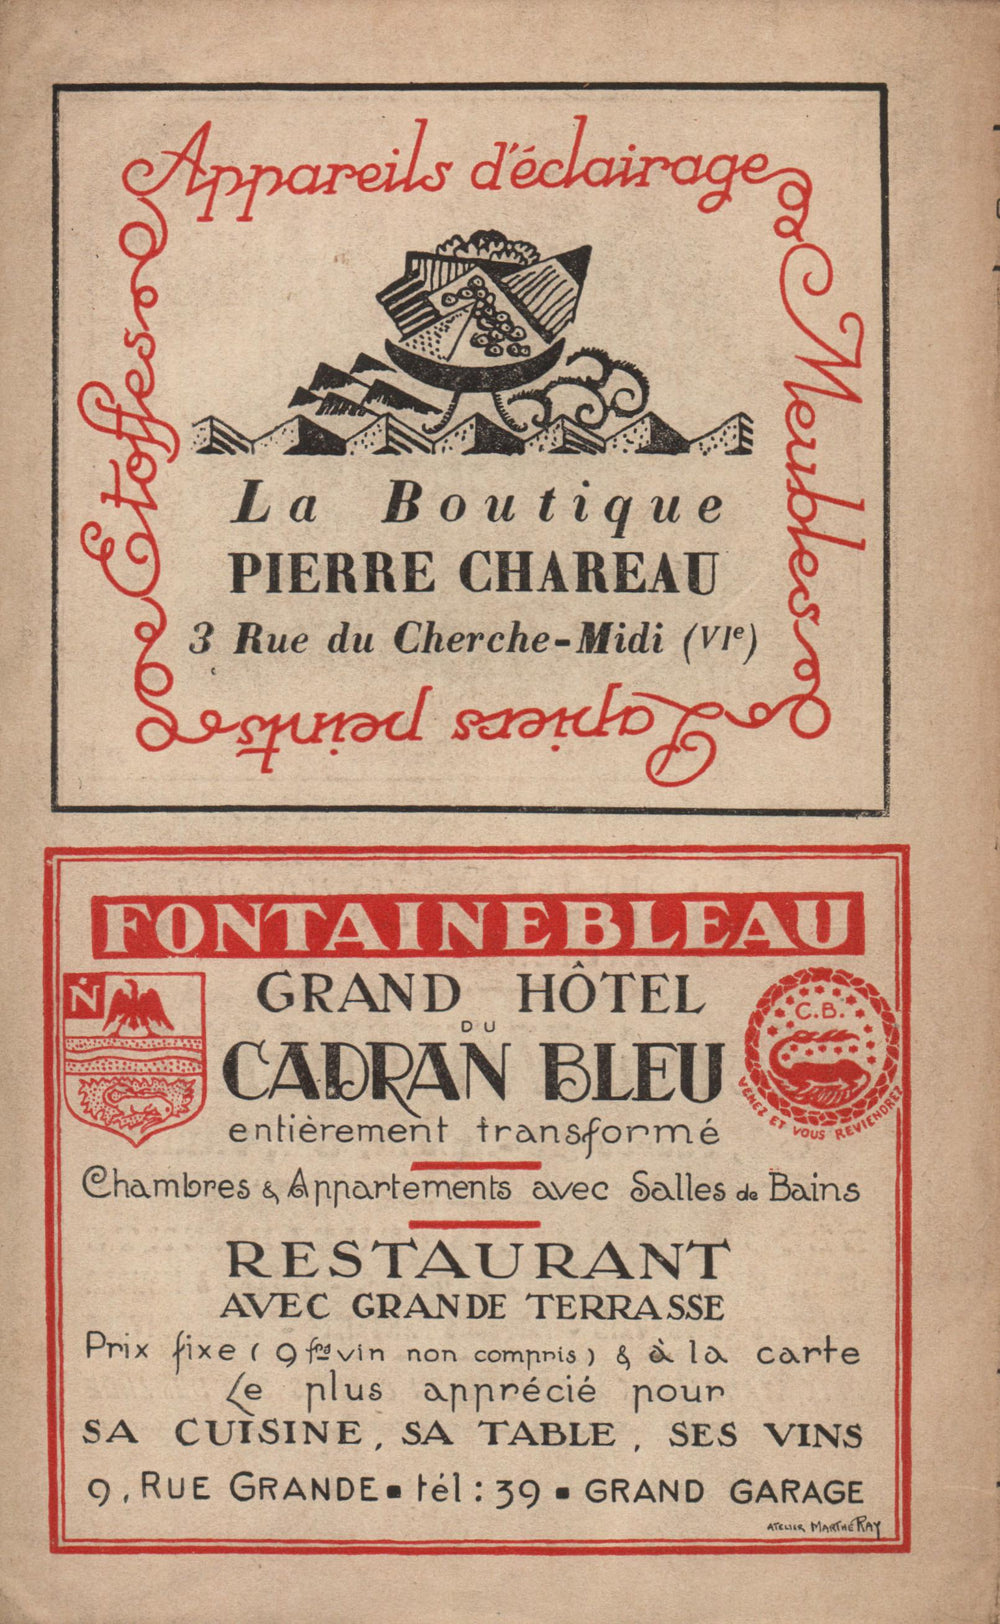 La Nouvelle Revue Française N' 121 (Octobre 1923)